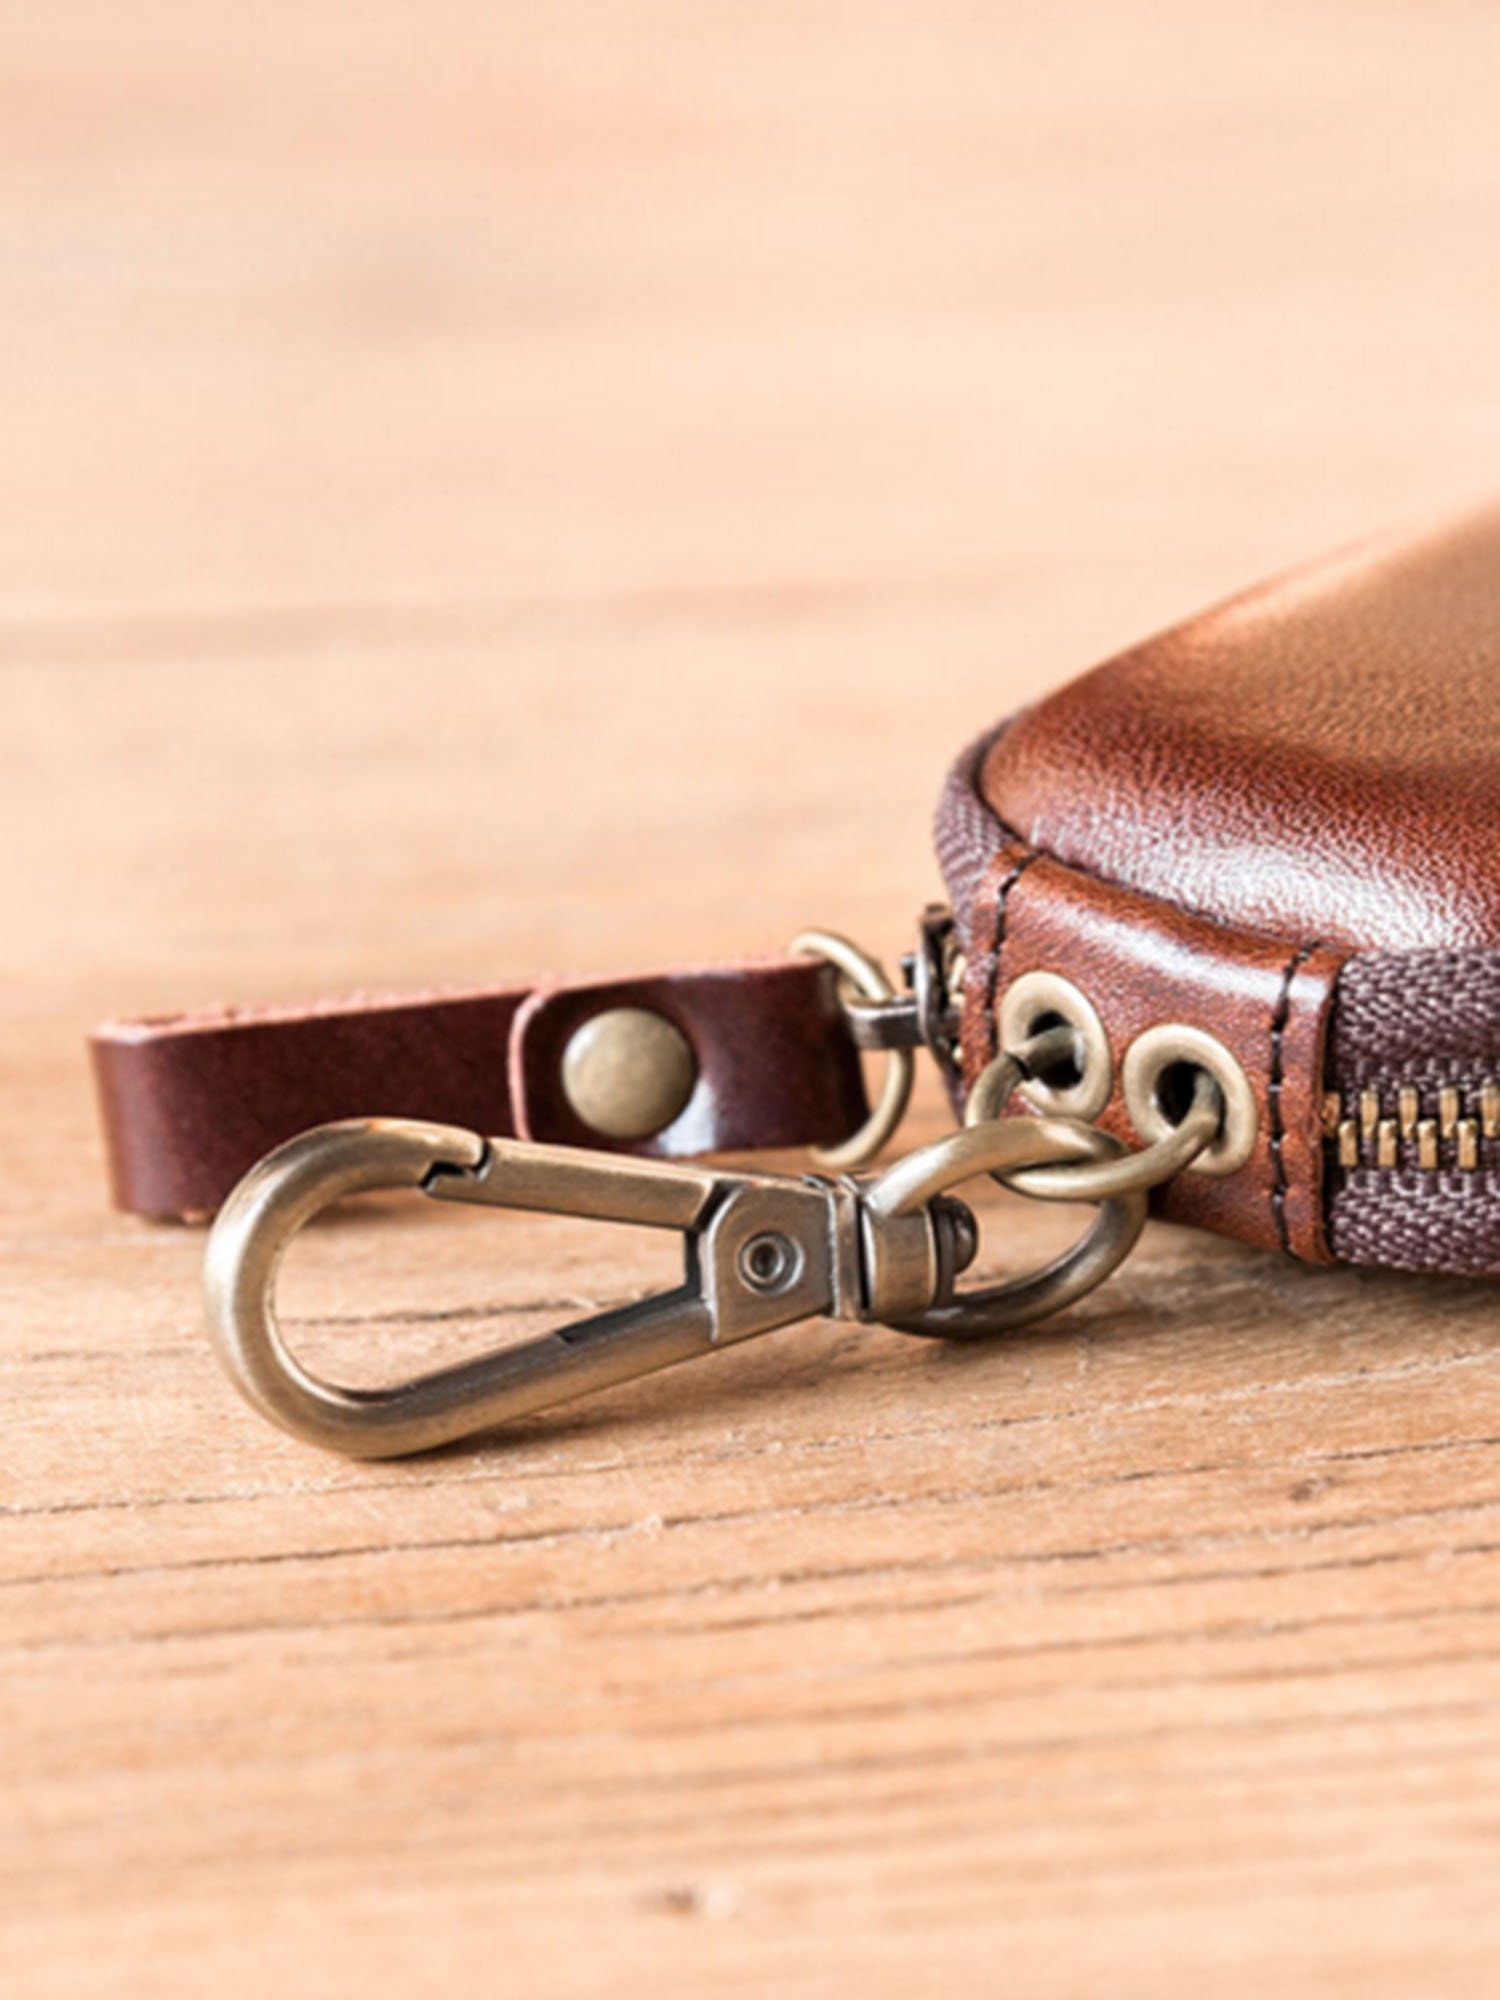 Car Key Casegenuine Leather Car Keys Wallet men Key Case With Zipper 